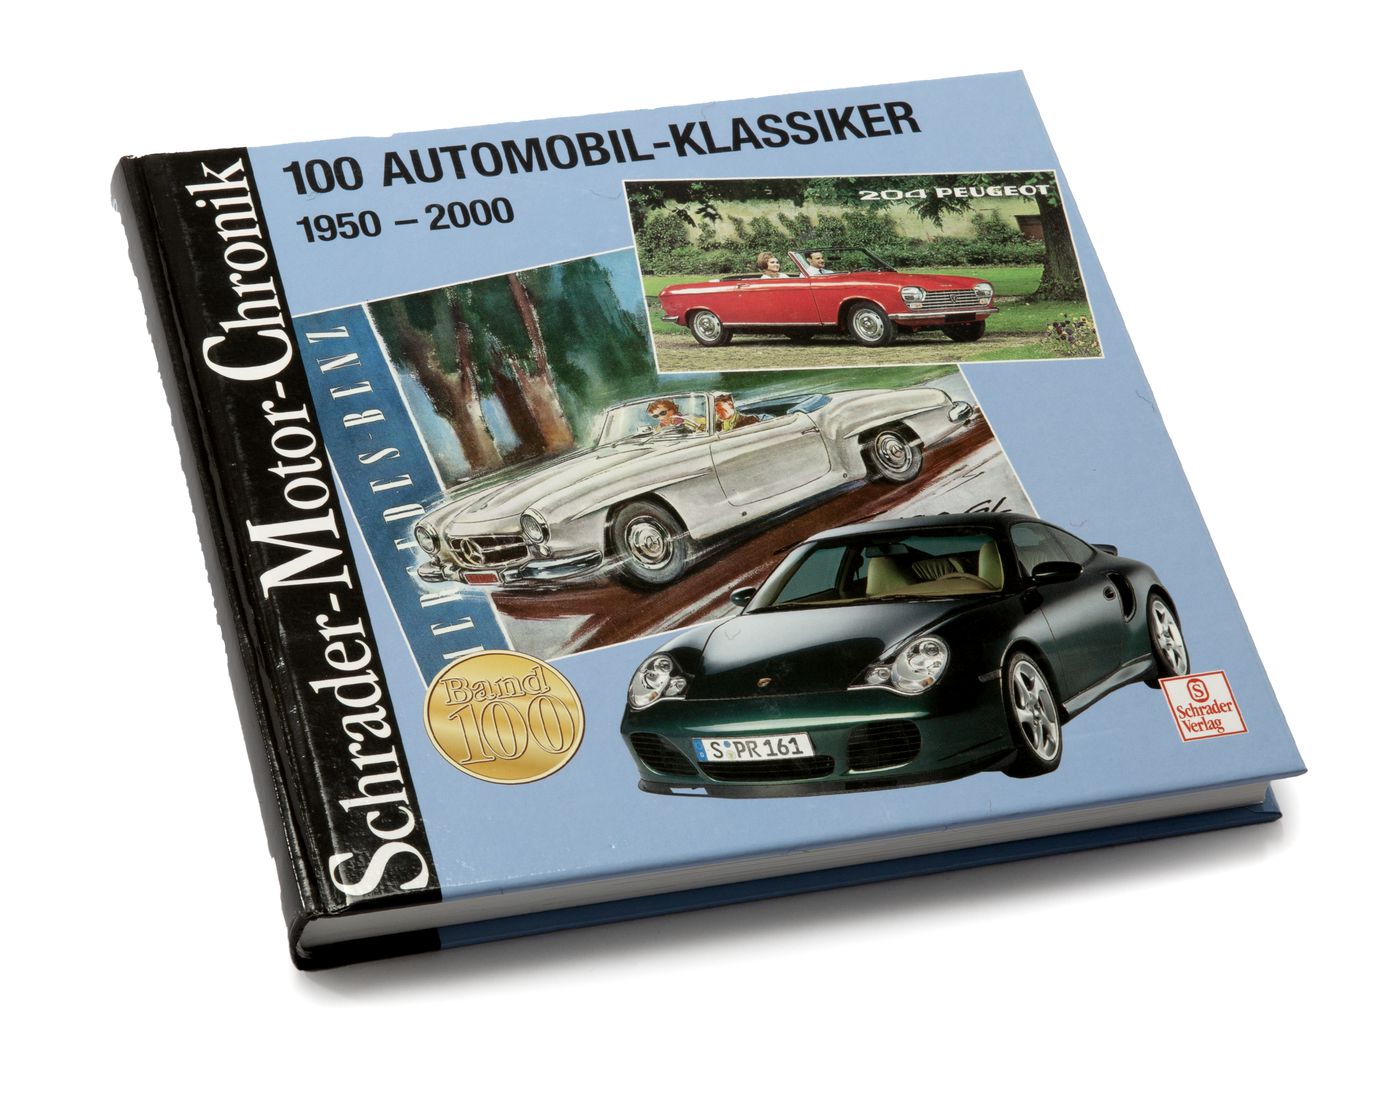 100 Automobil-Klassiker 1950-2000